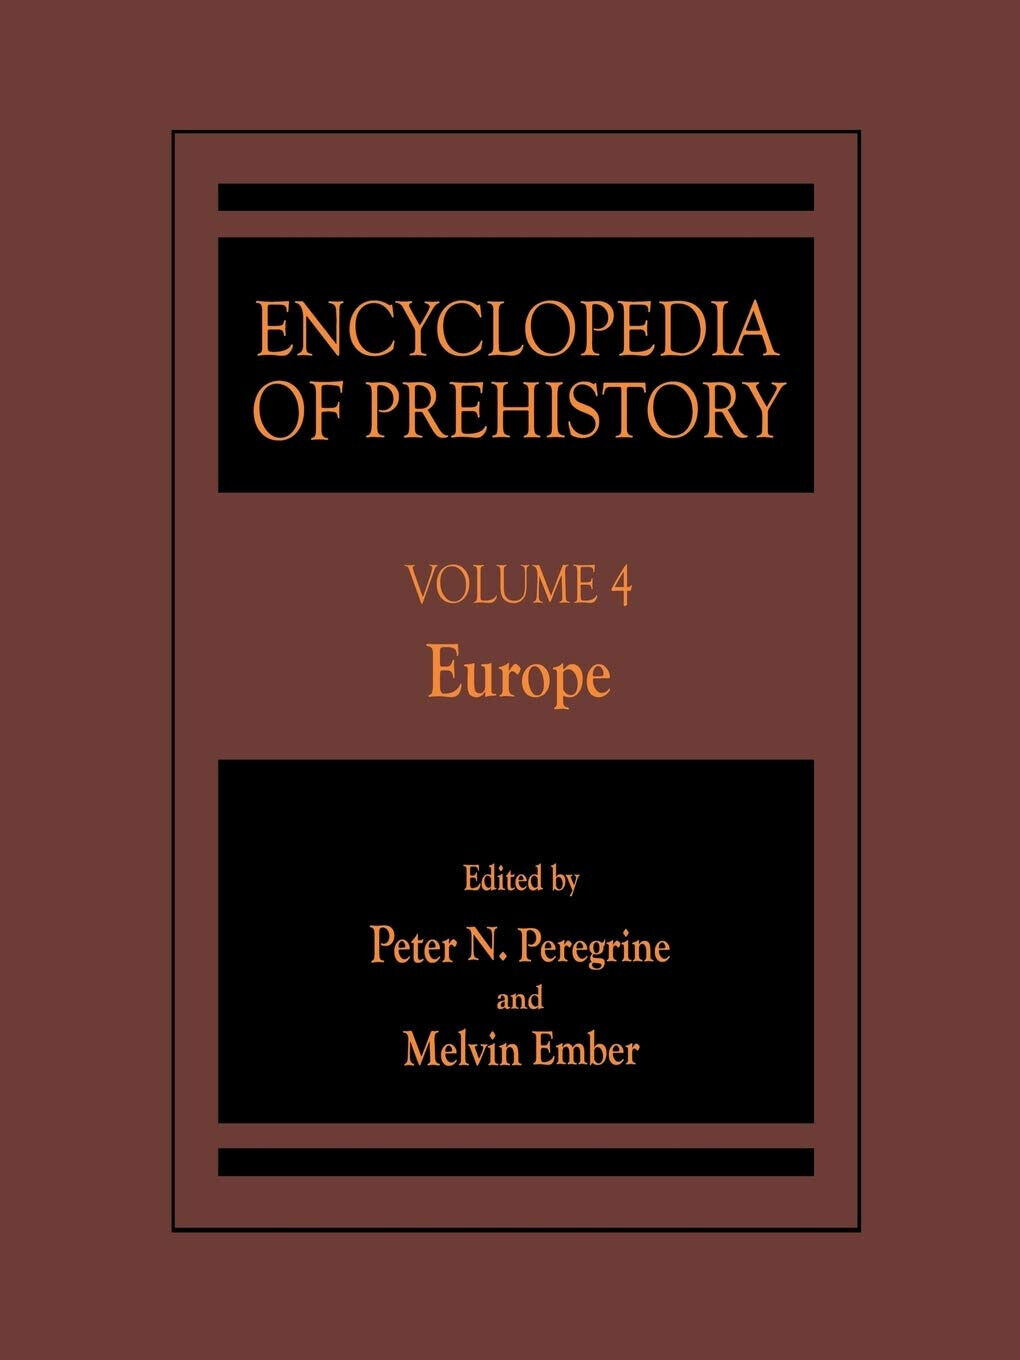 Encyclopedia of Prehistory: Volume 4: Europe - Peter N. Peregrine - 2013